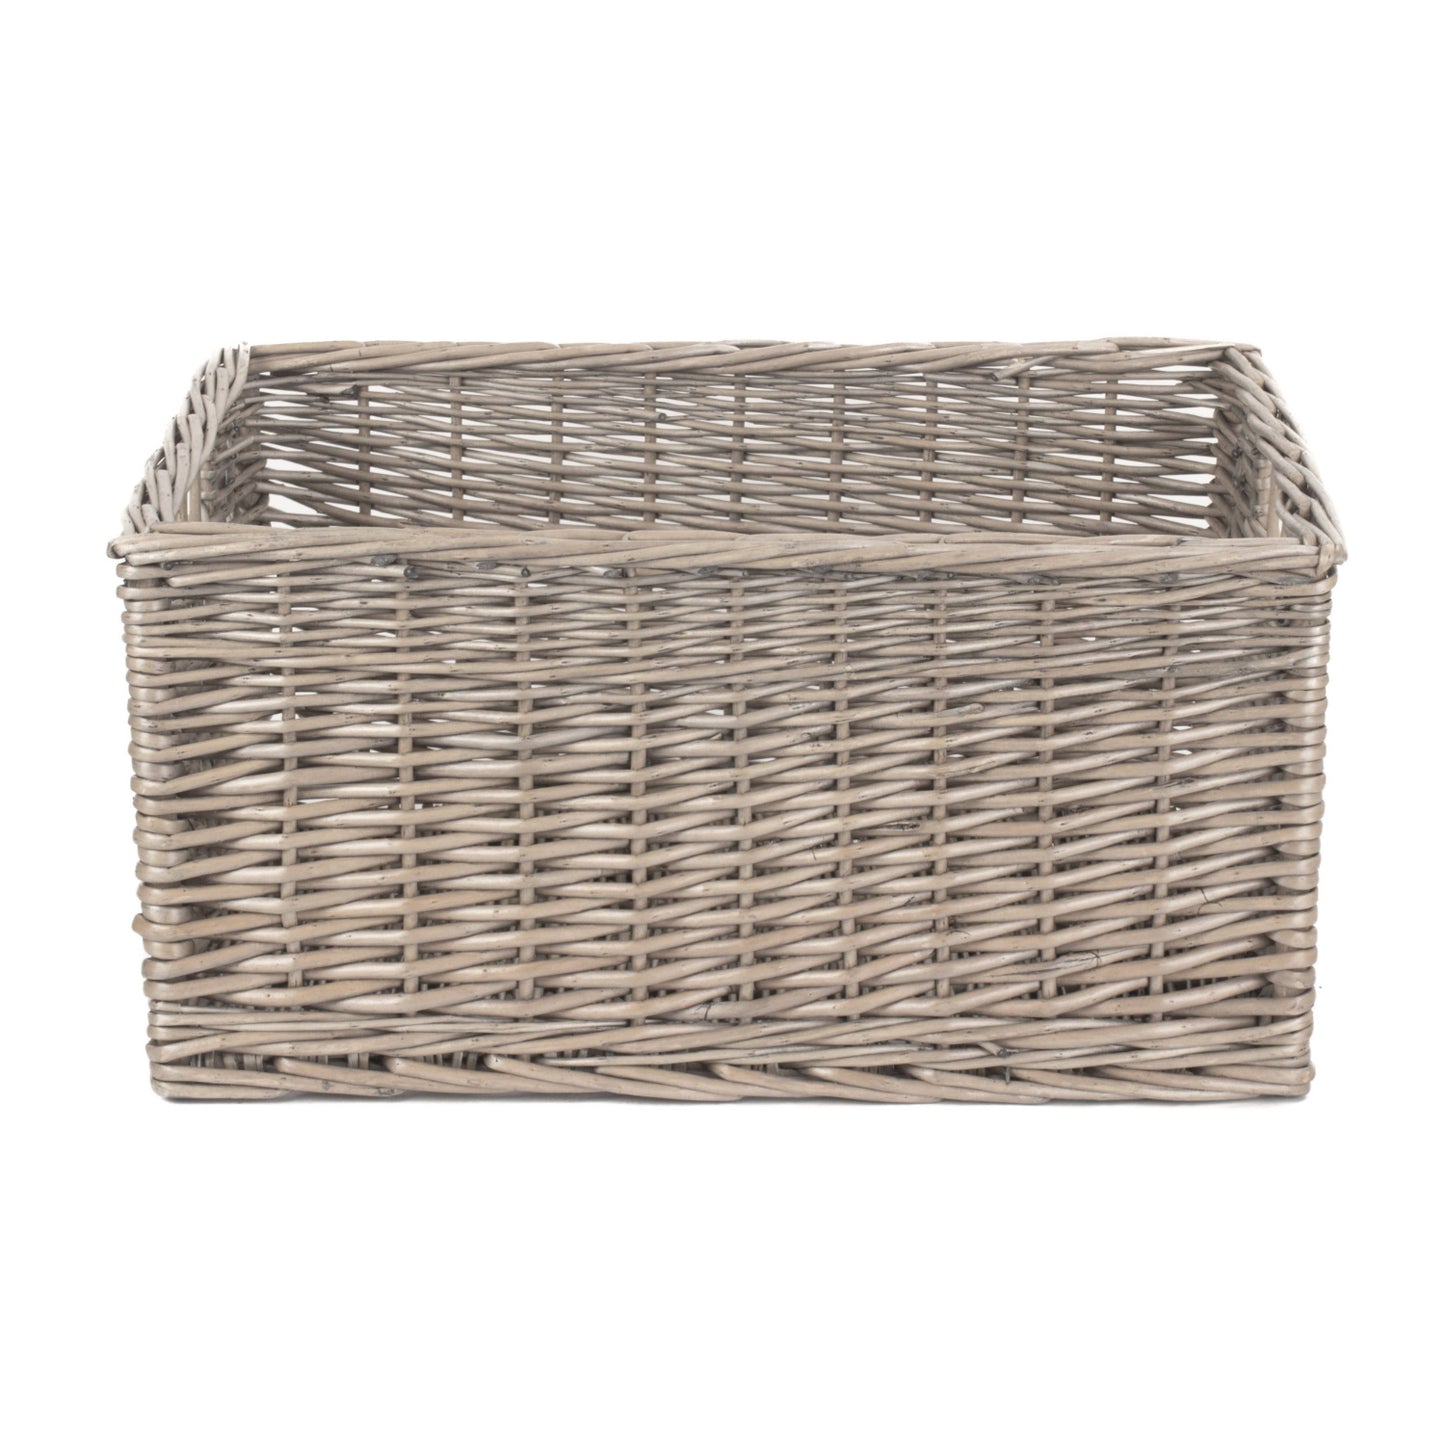 Extra Large Antique Wash Storage Basket